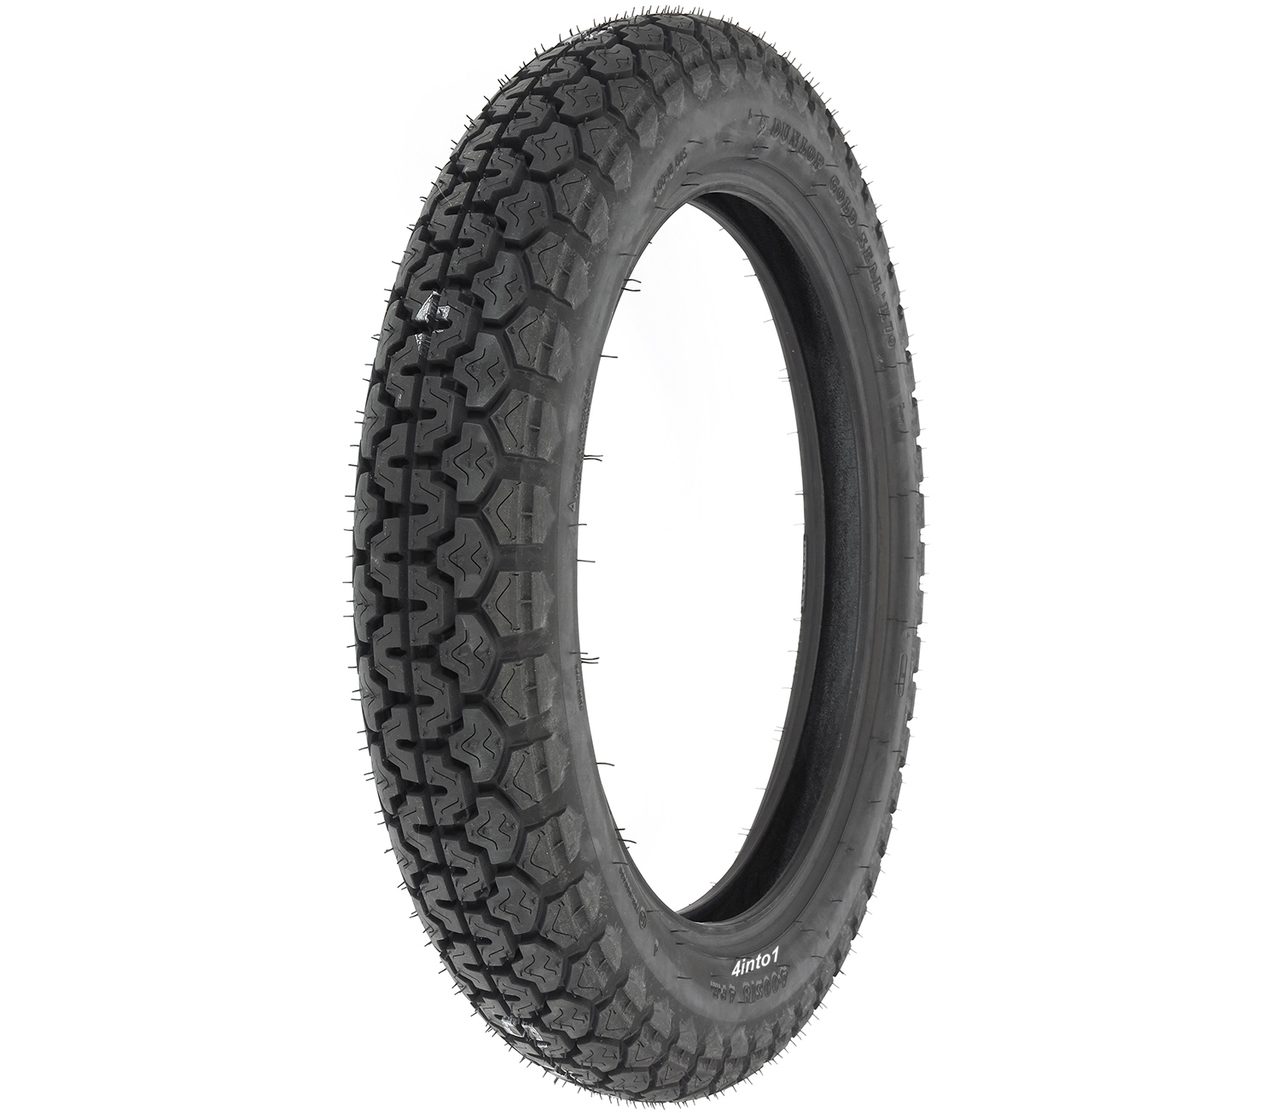 Dunlop-vintage-K70-motorcycle-tire-rear__94933.1488929559.1280.1280.jpg